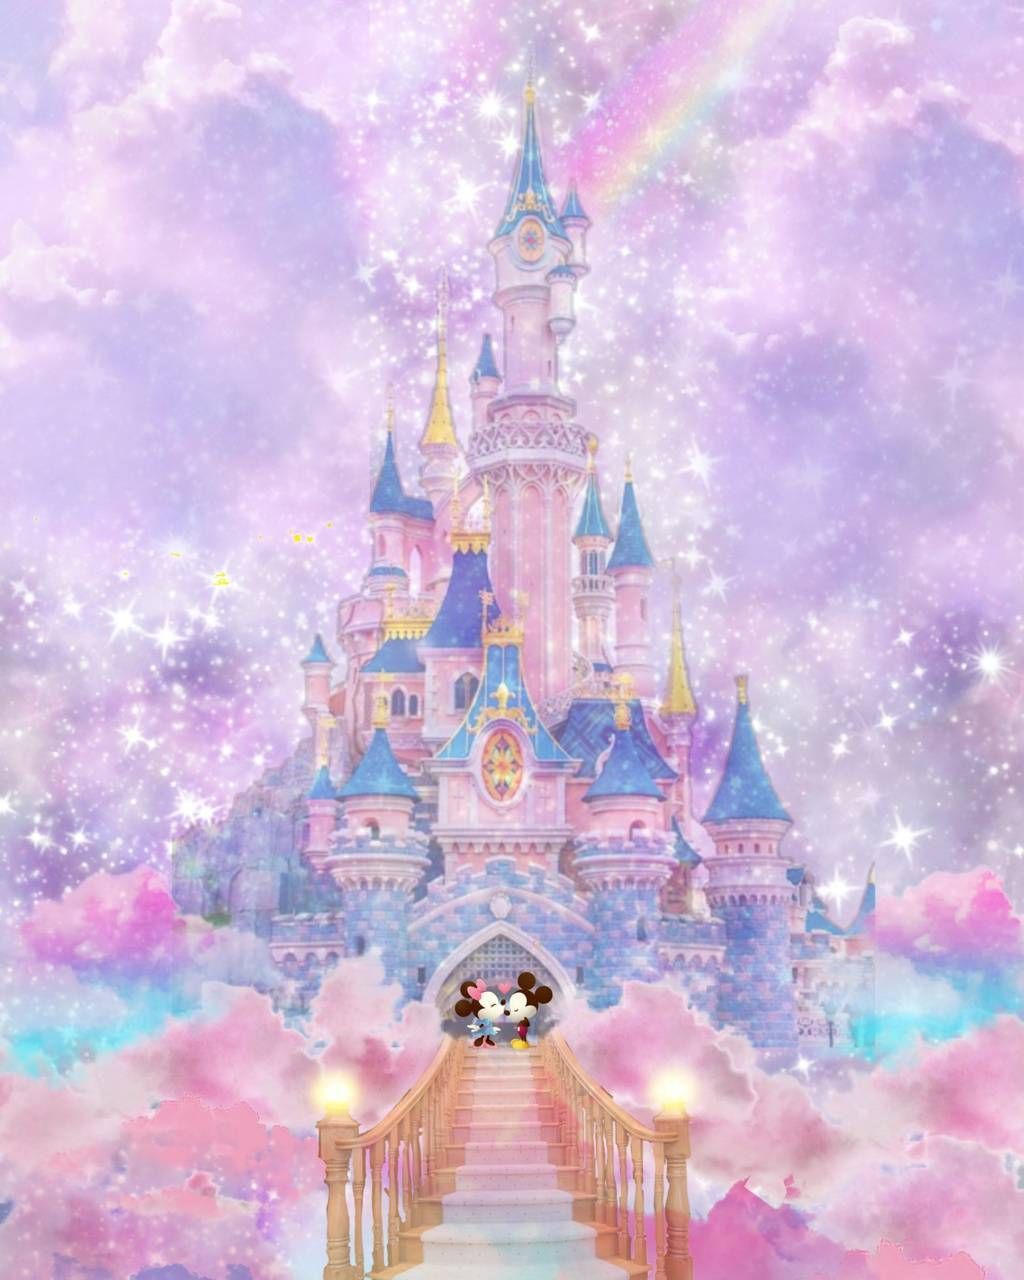 Download Disney castle wallpaper by DisneyClarke now. Browse millions of. Disney wallpaper, Disney princess wallpaper, Cute disney wallpaper